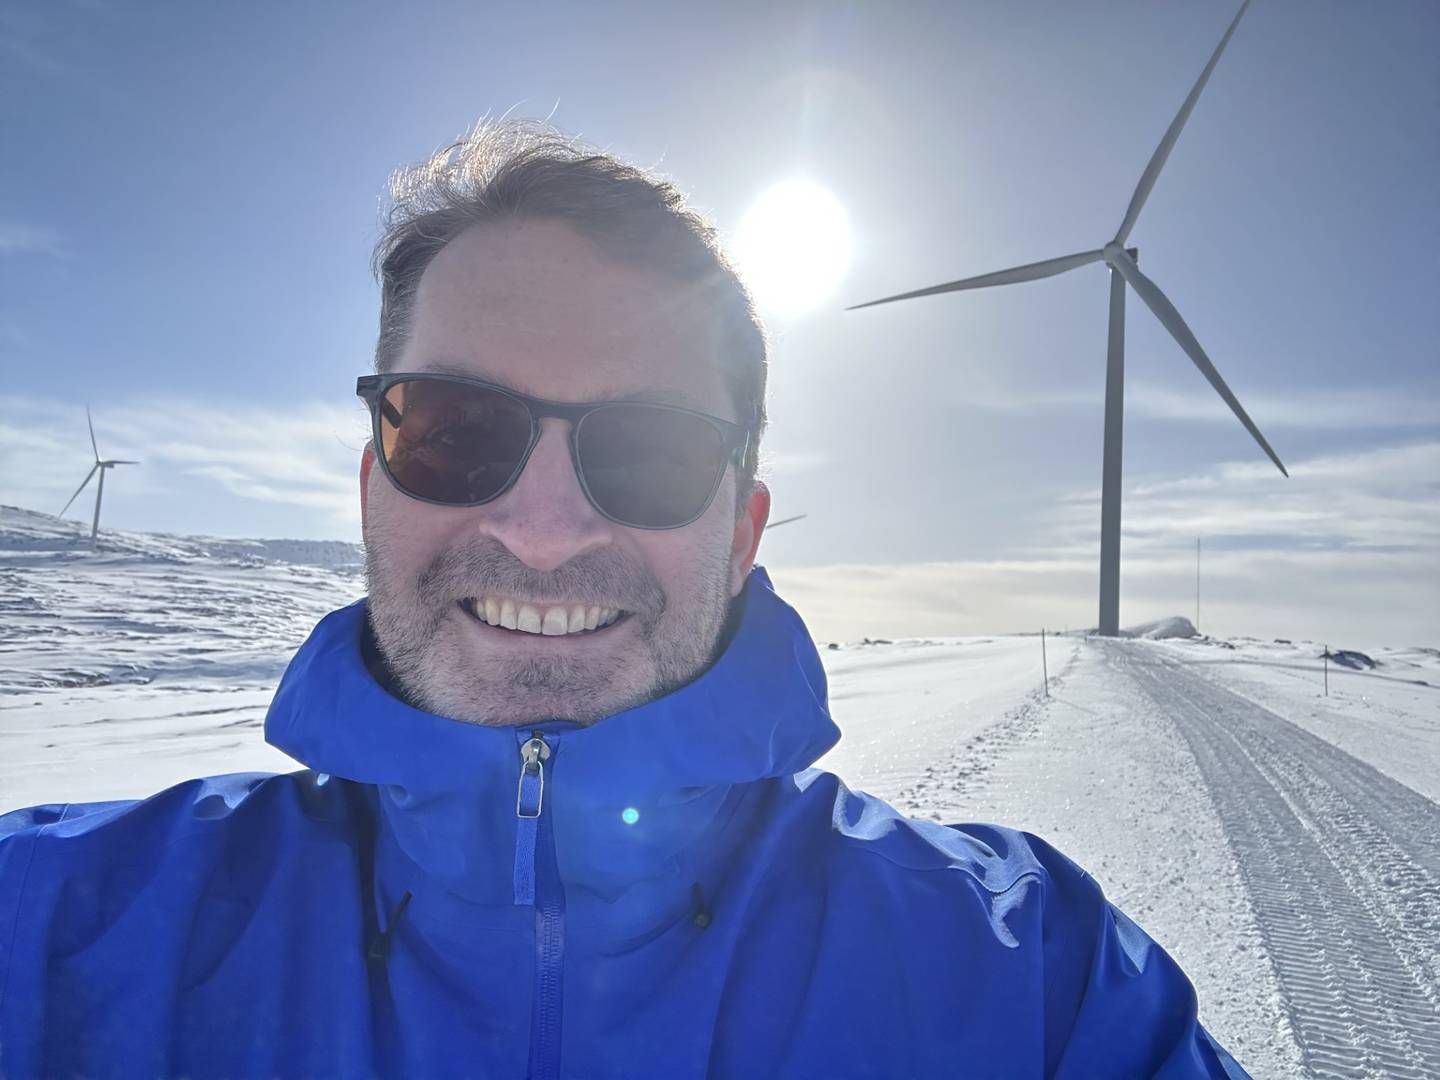 MÅ SETTE OPP FARTEN ETTER LEKKASJE: Eivind Fjellstad prøver å bekjempe vindkraftmotstand med fakta. | Foto: Privat